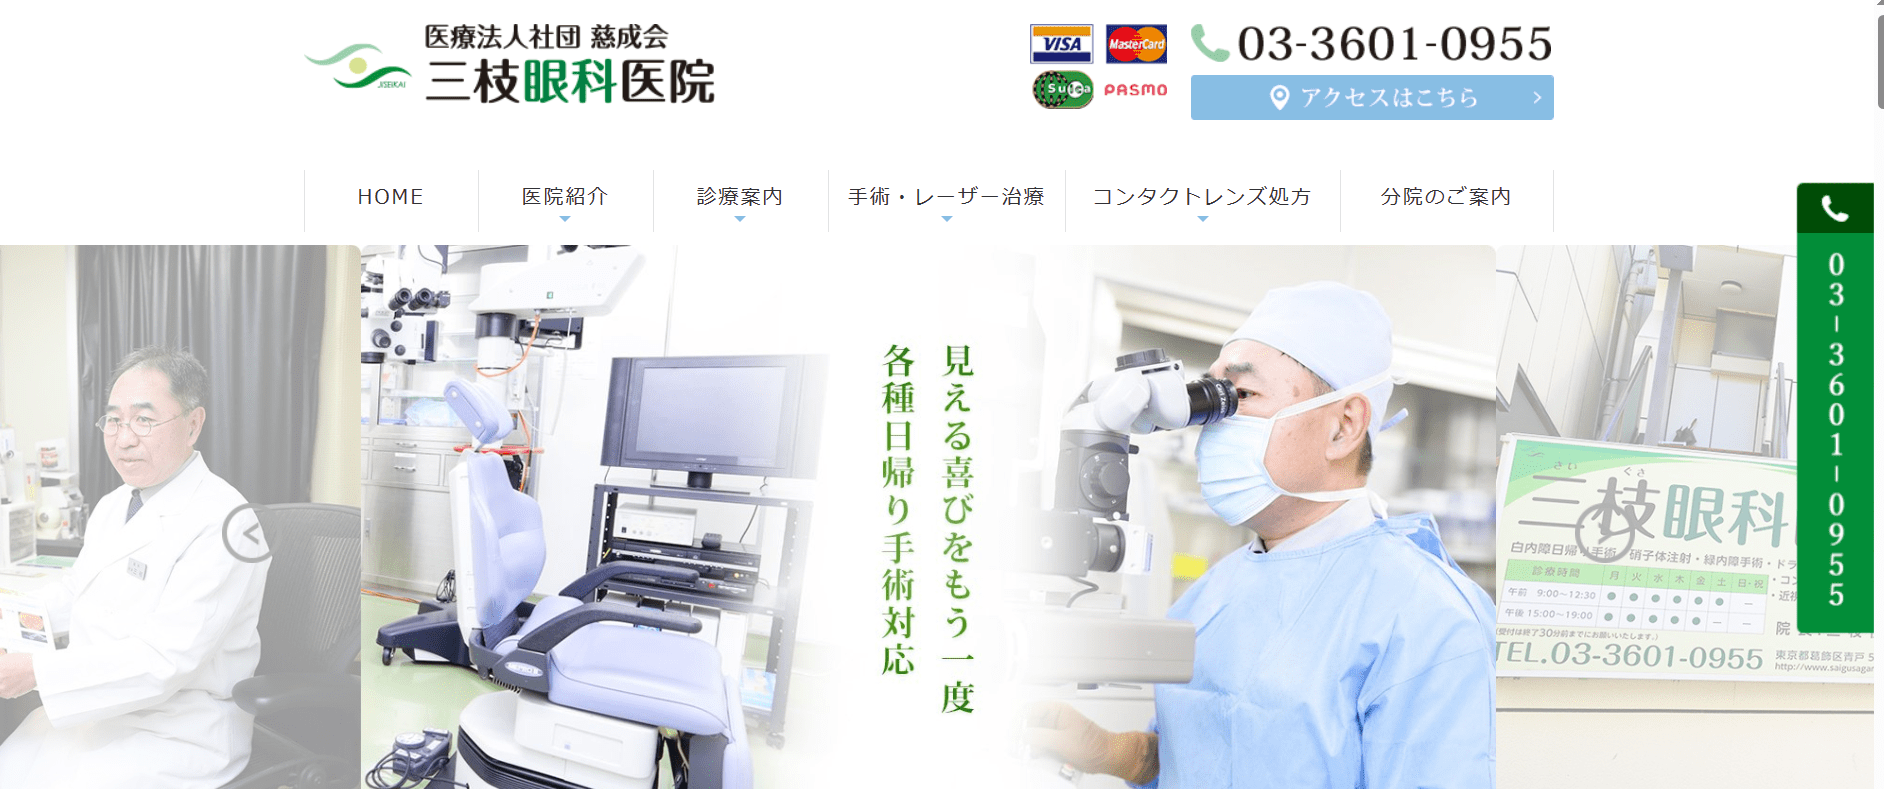 東京都で評判のレーシック手術におすすめのクリニック10選 三枝眼科医院